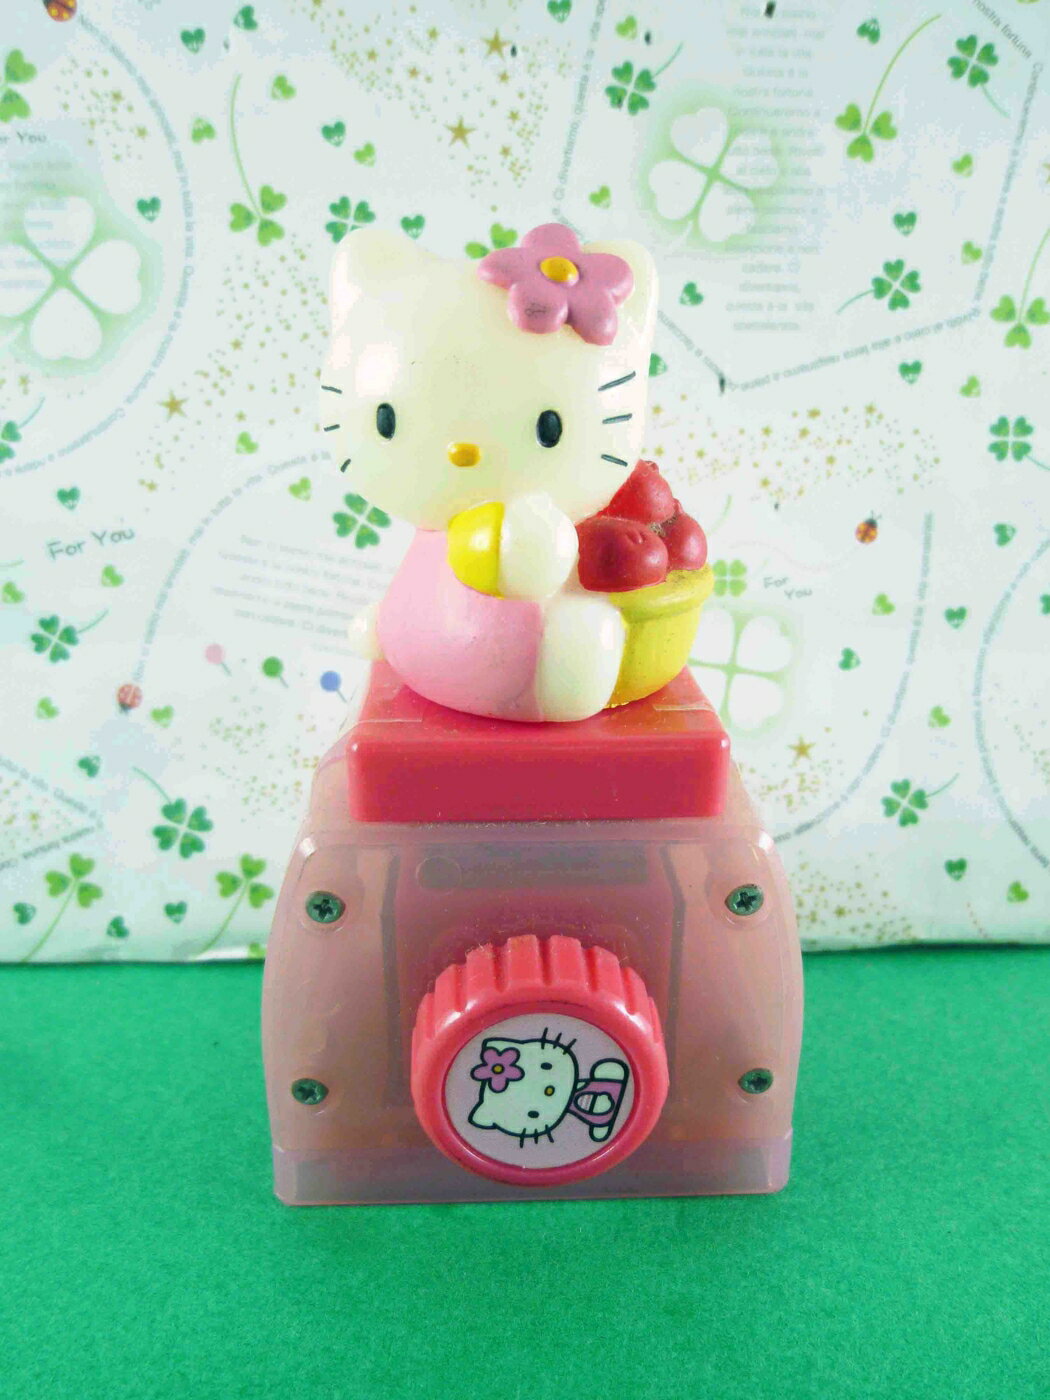 【震撼精品百貨】Hello Kitty 凱蒂貓 KITTY多層印章-4入圖(蘋果) 震撼日式精品百貨